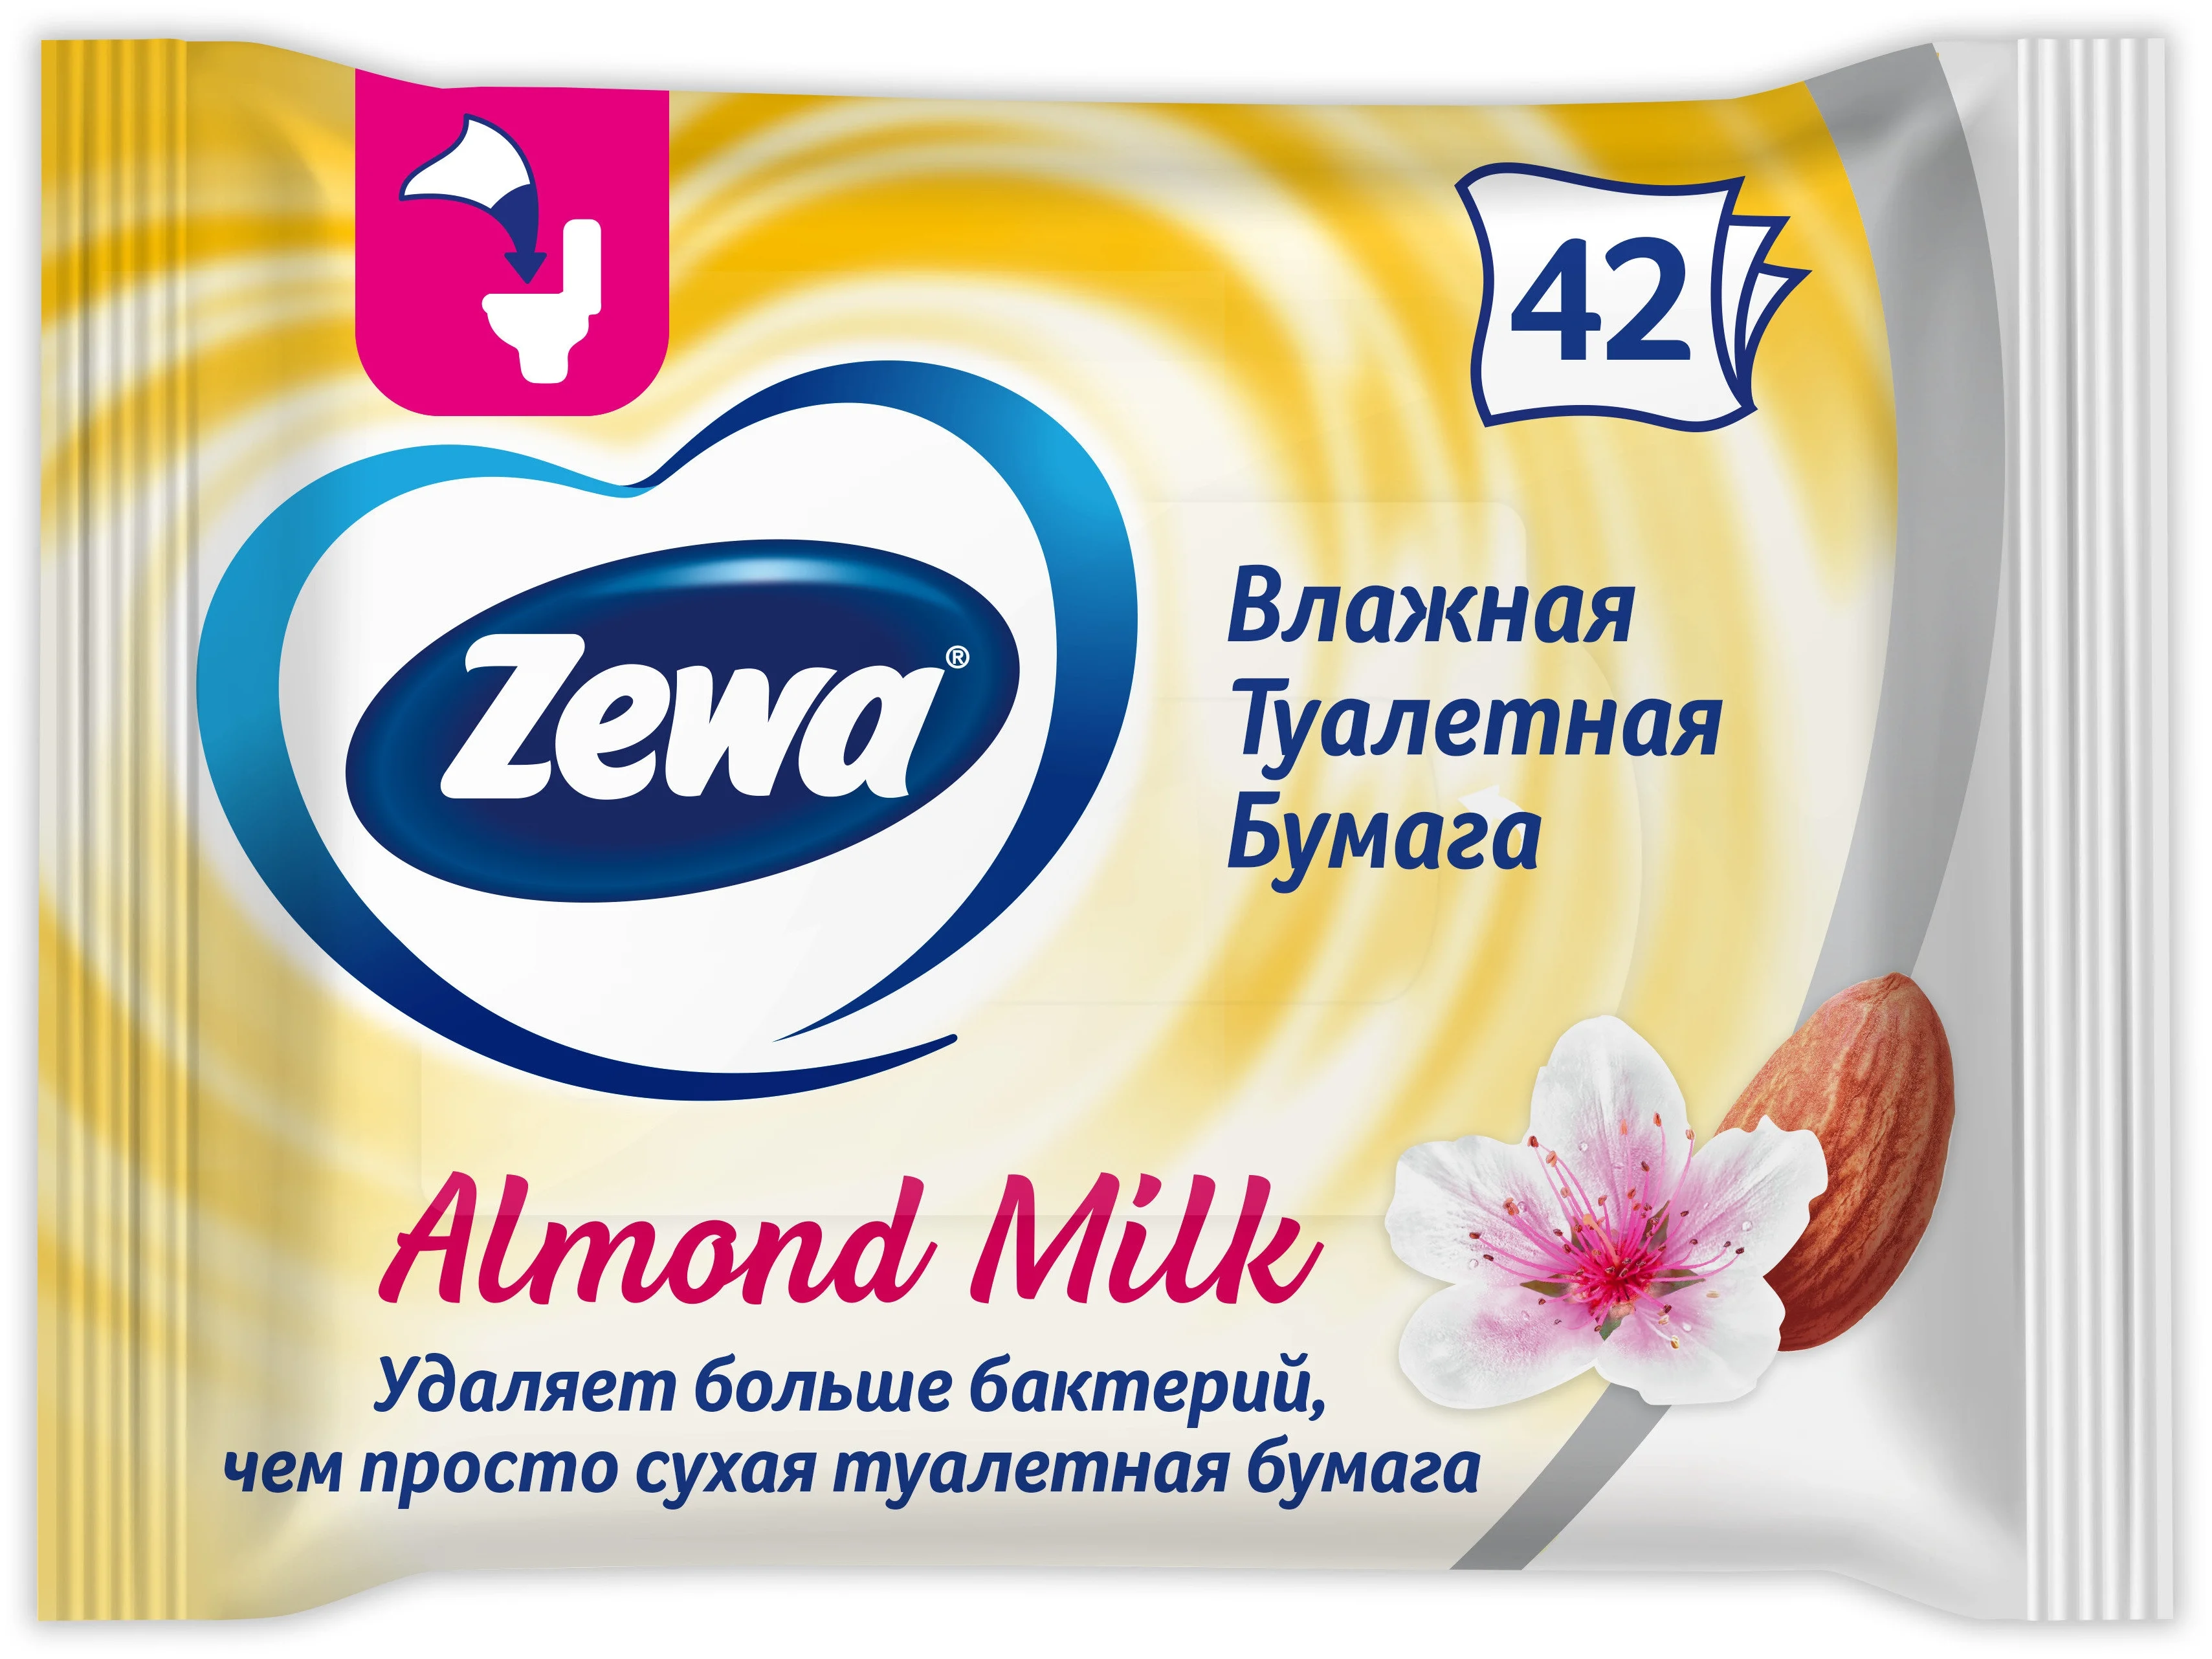 Zewa "Миндальное молочко" - особенности: ароматизация